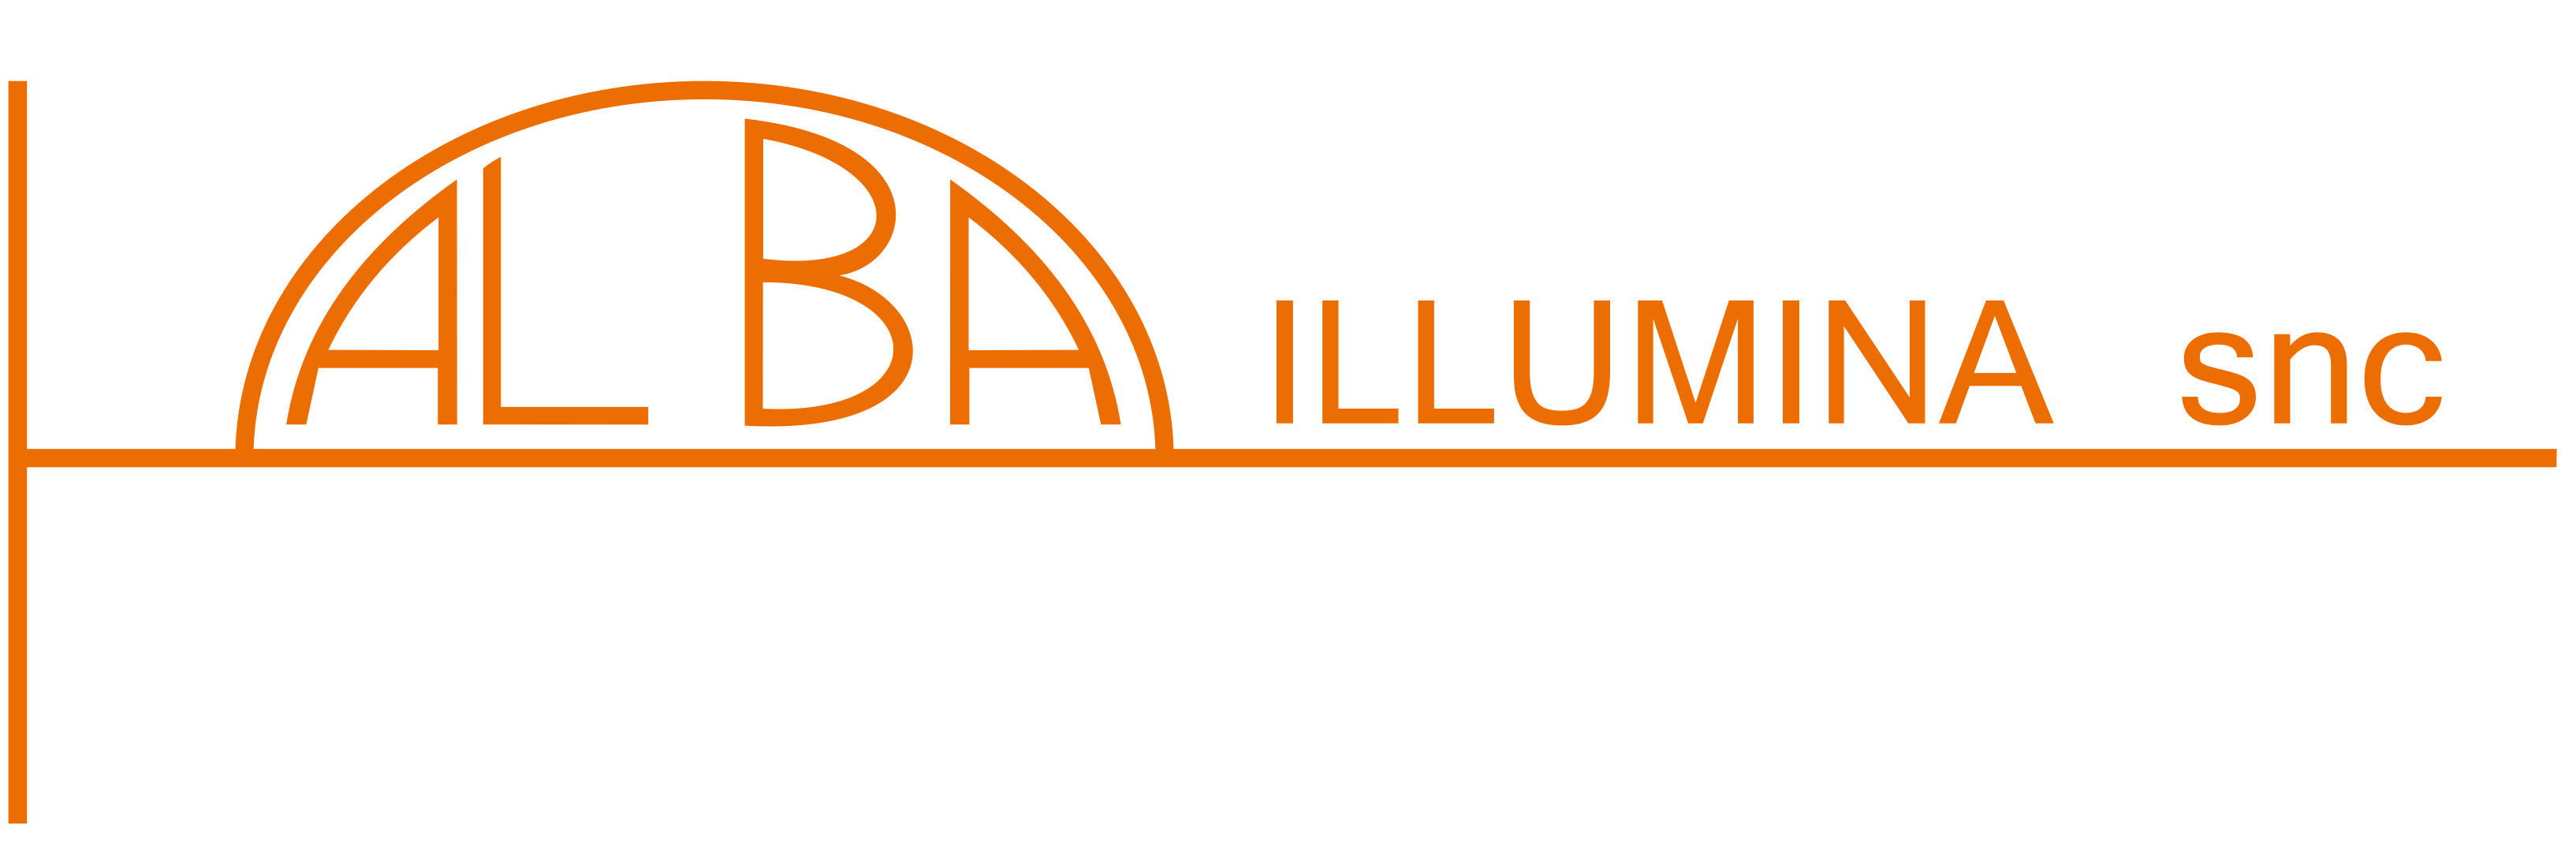 Alba Illumina